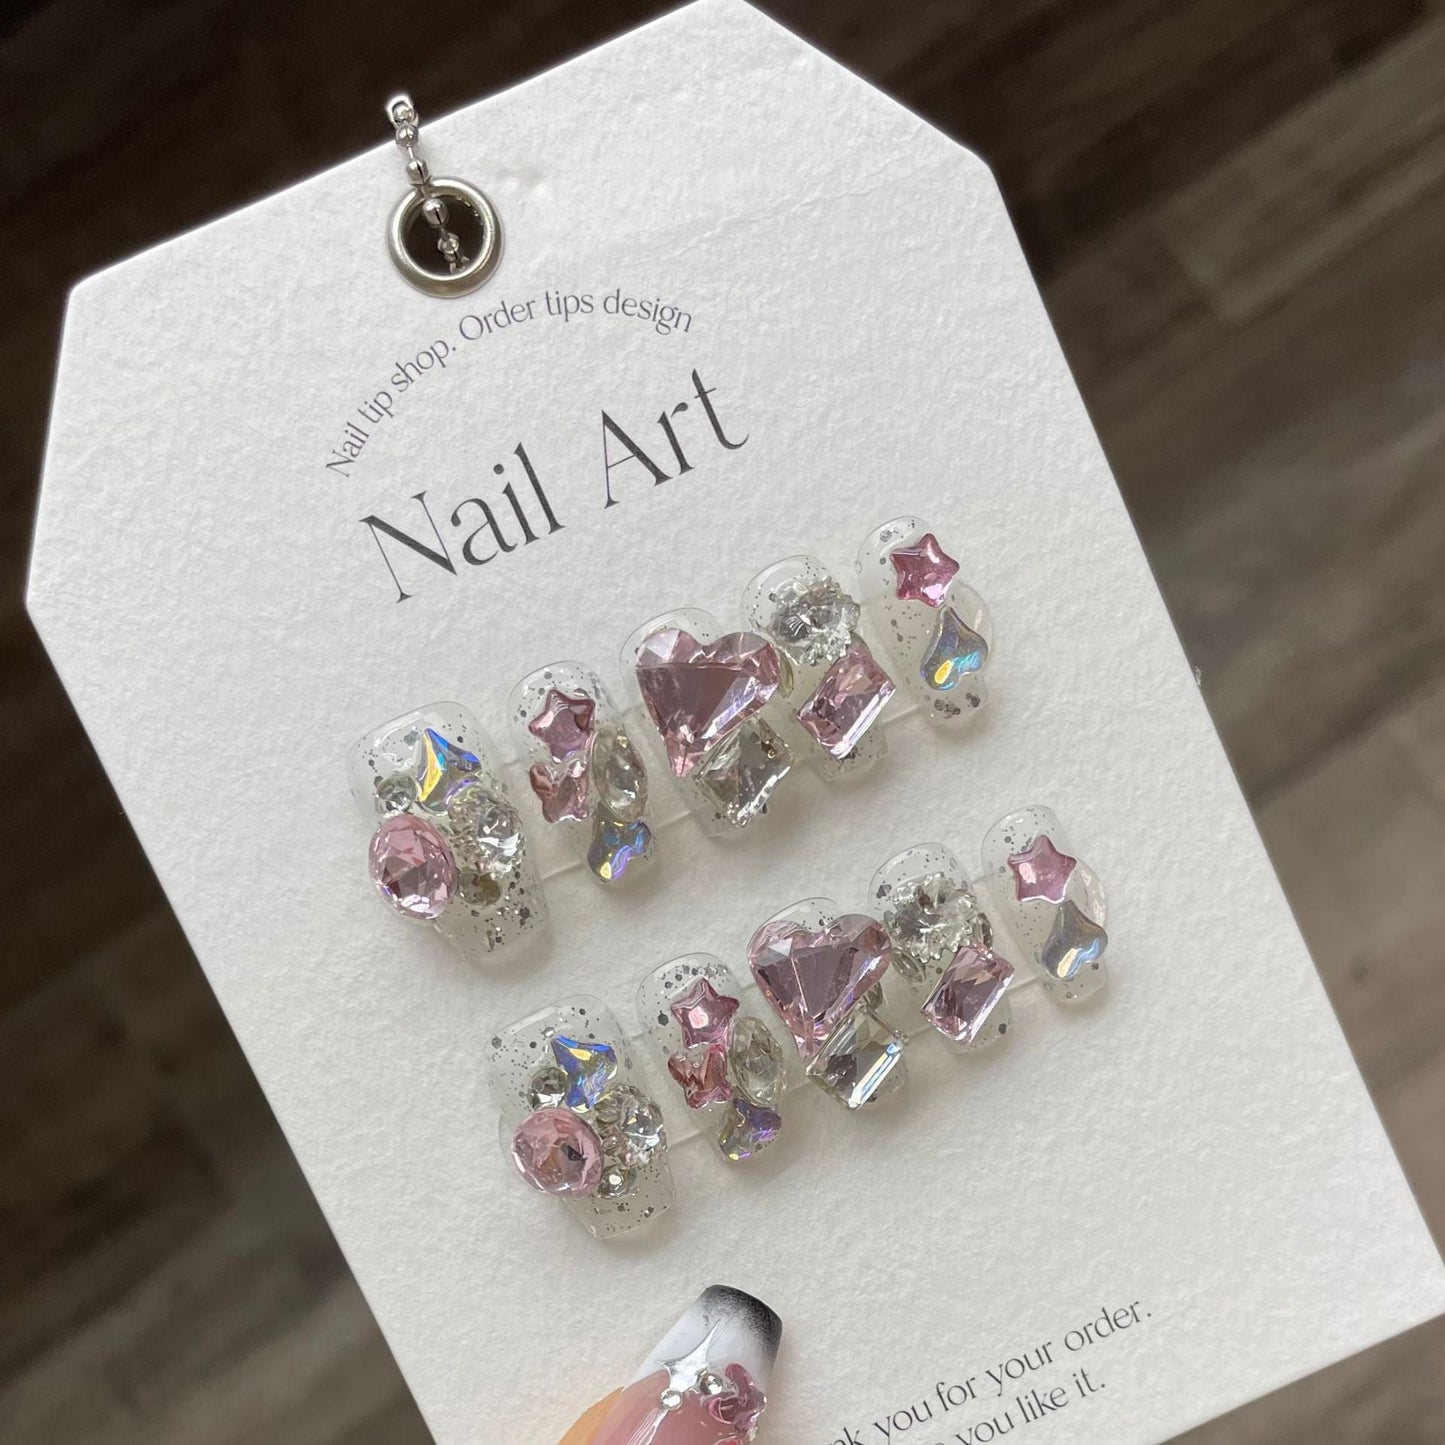 897 Strass-stijl pers op nagels 100% handgemaakte kunstnagels wit roze